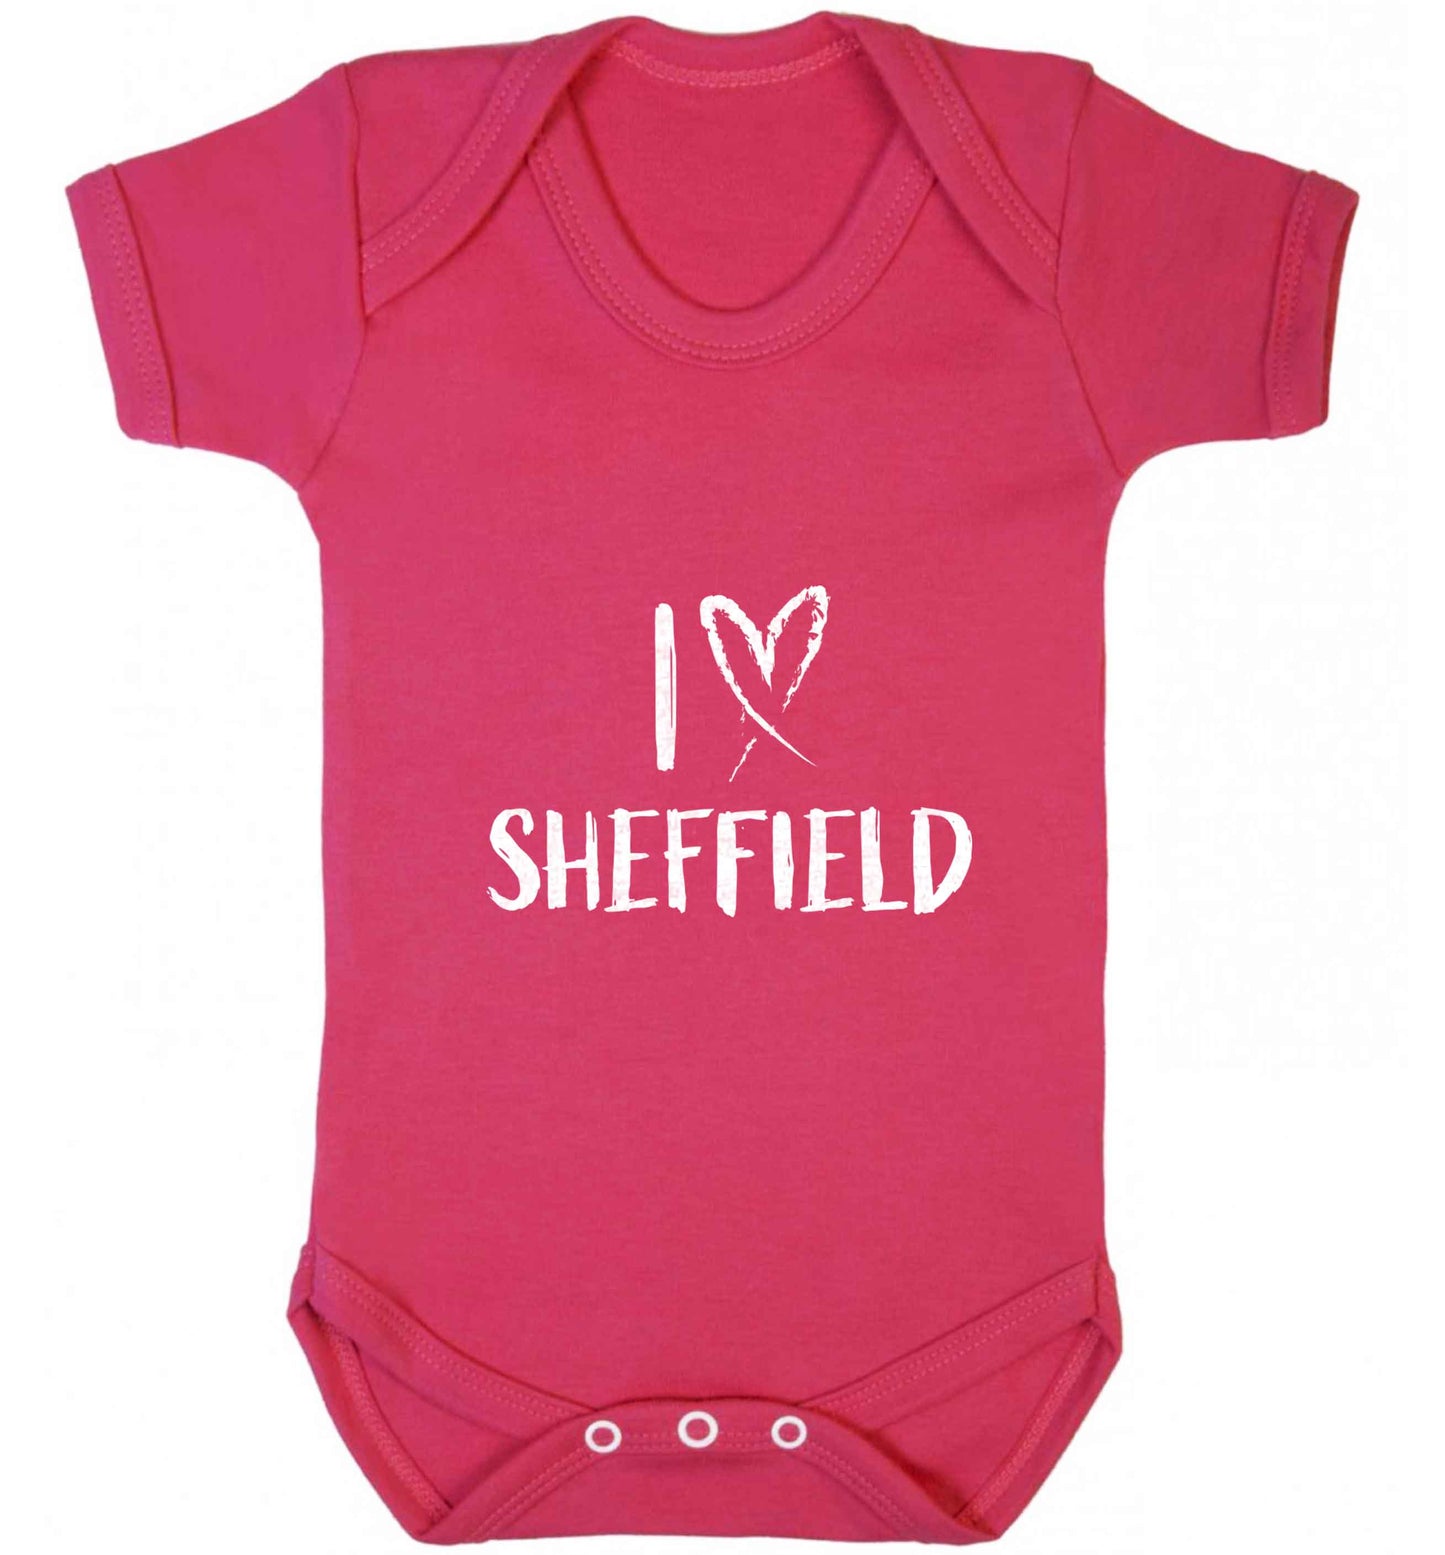 I love Sheffield baby vest dark pink 18-24 months